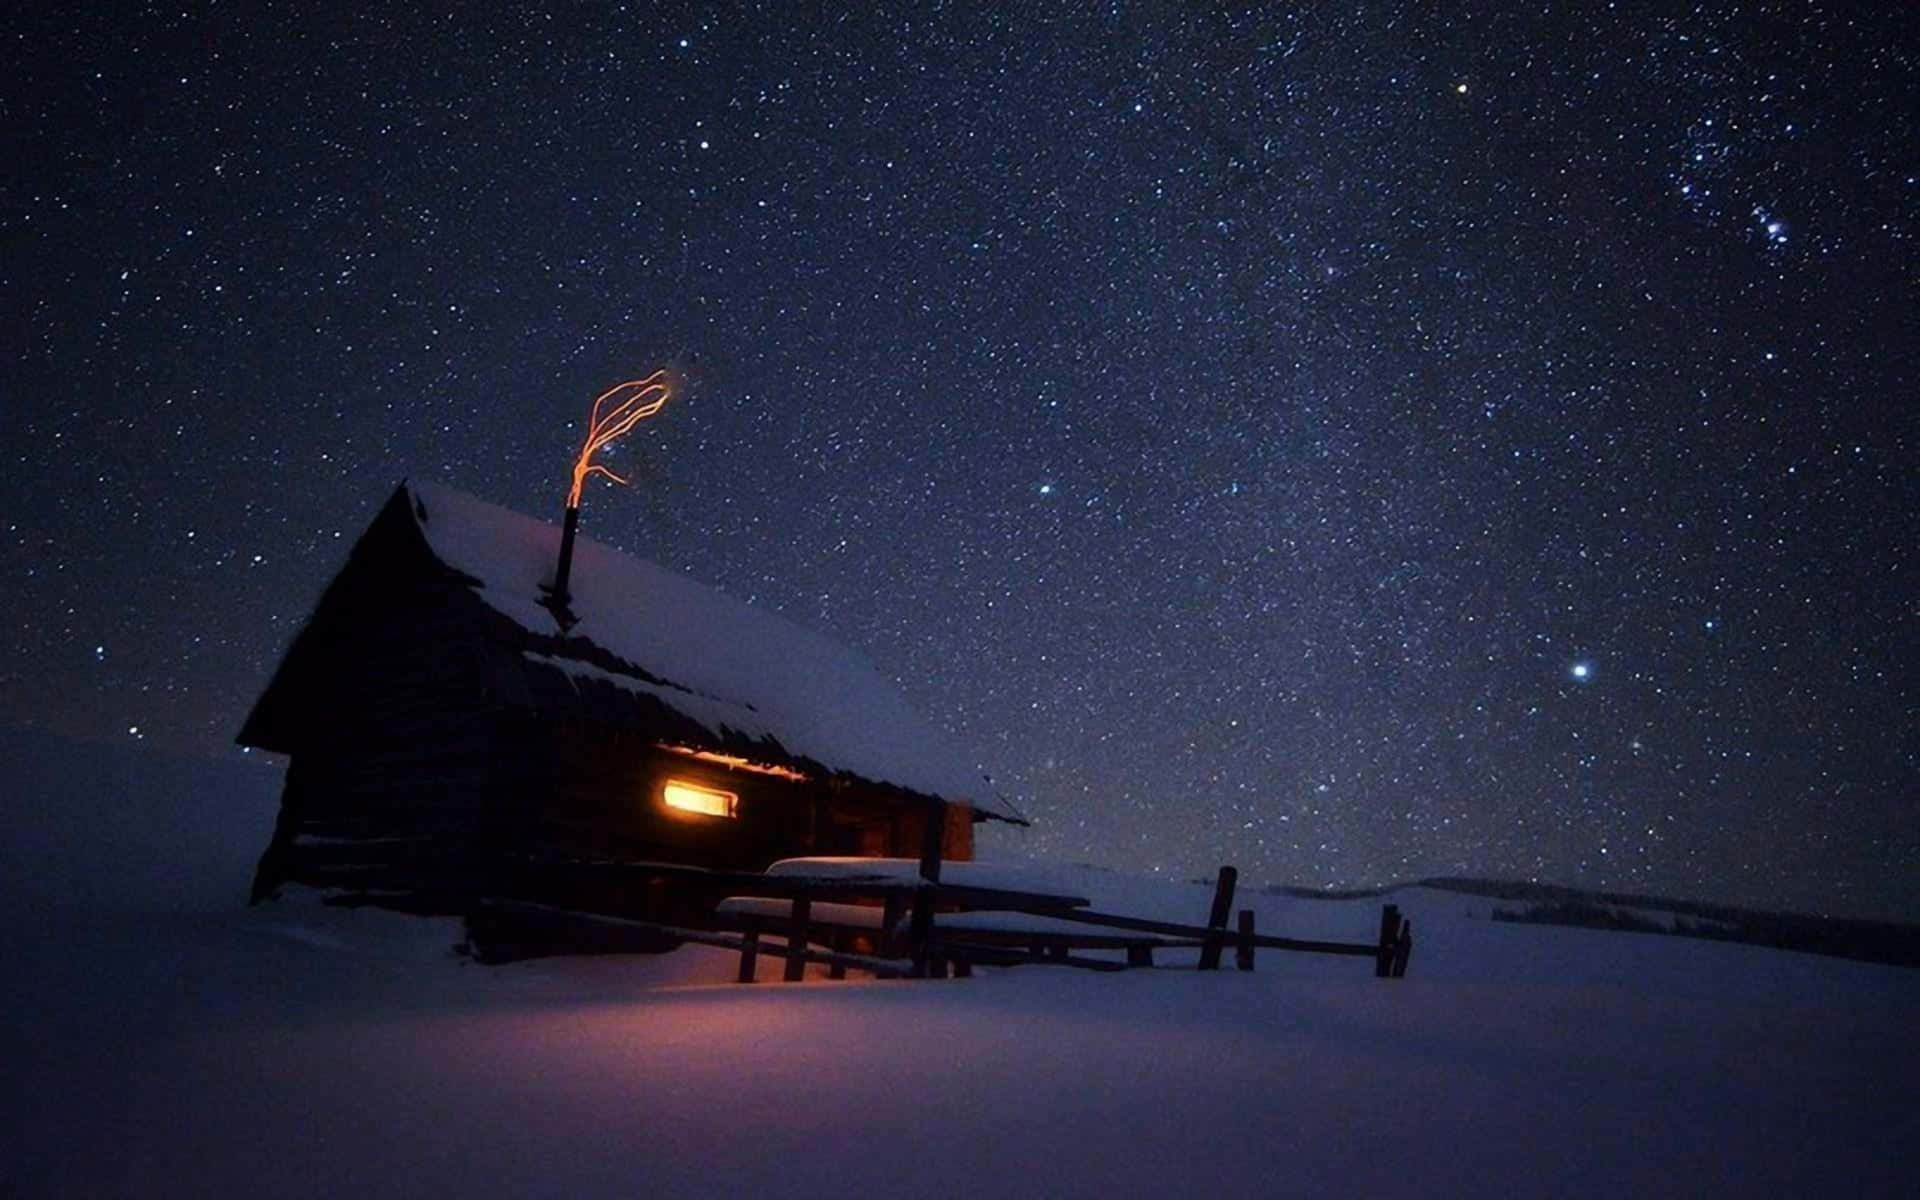 Cielopacífico De Noche Invernal En El Campo. Fondo de pantalla